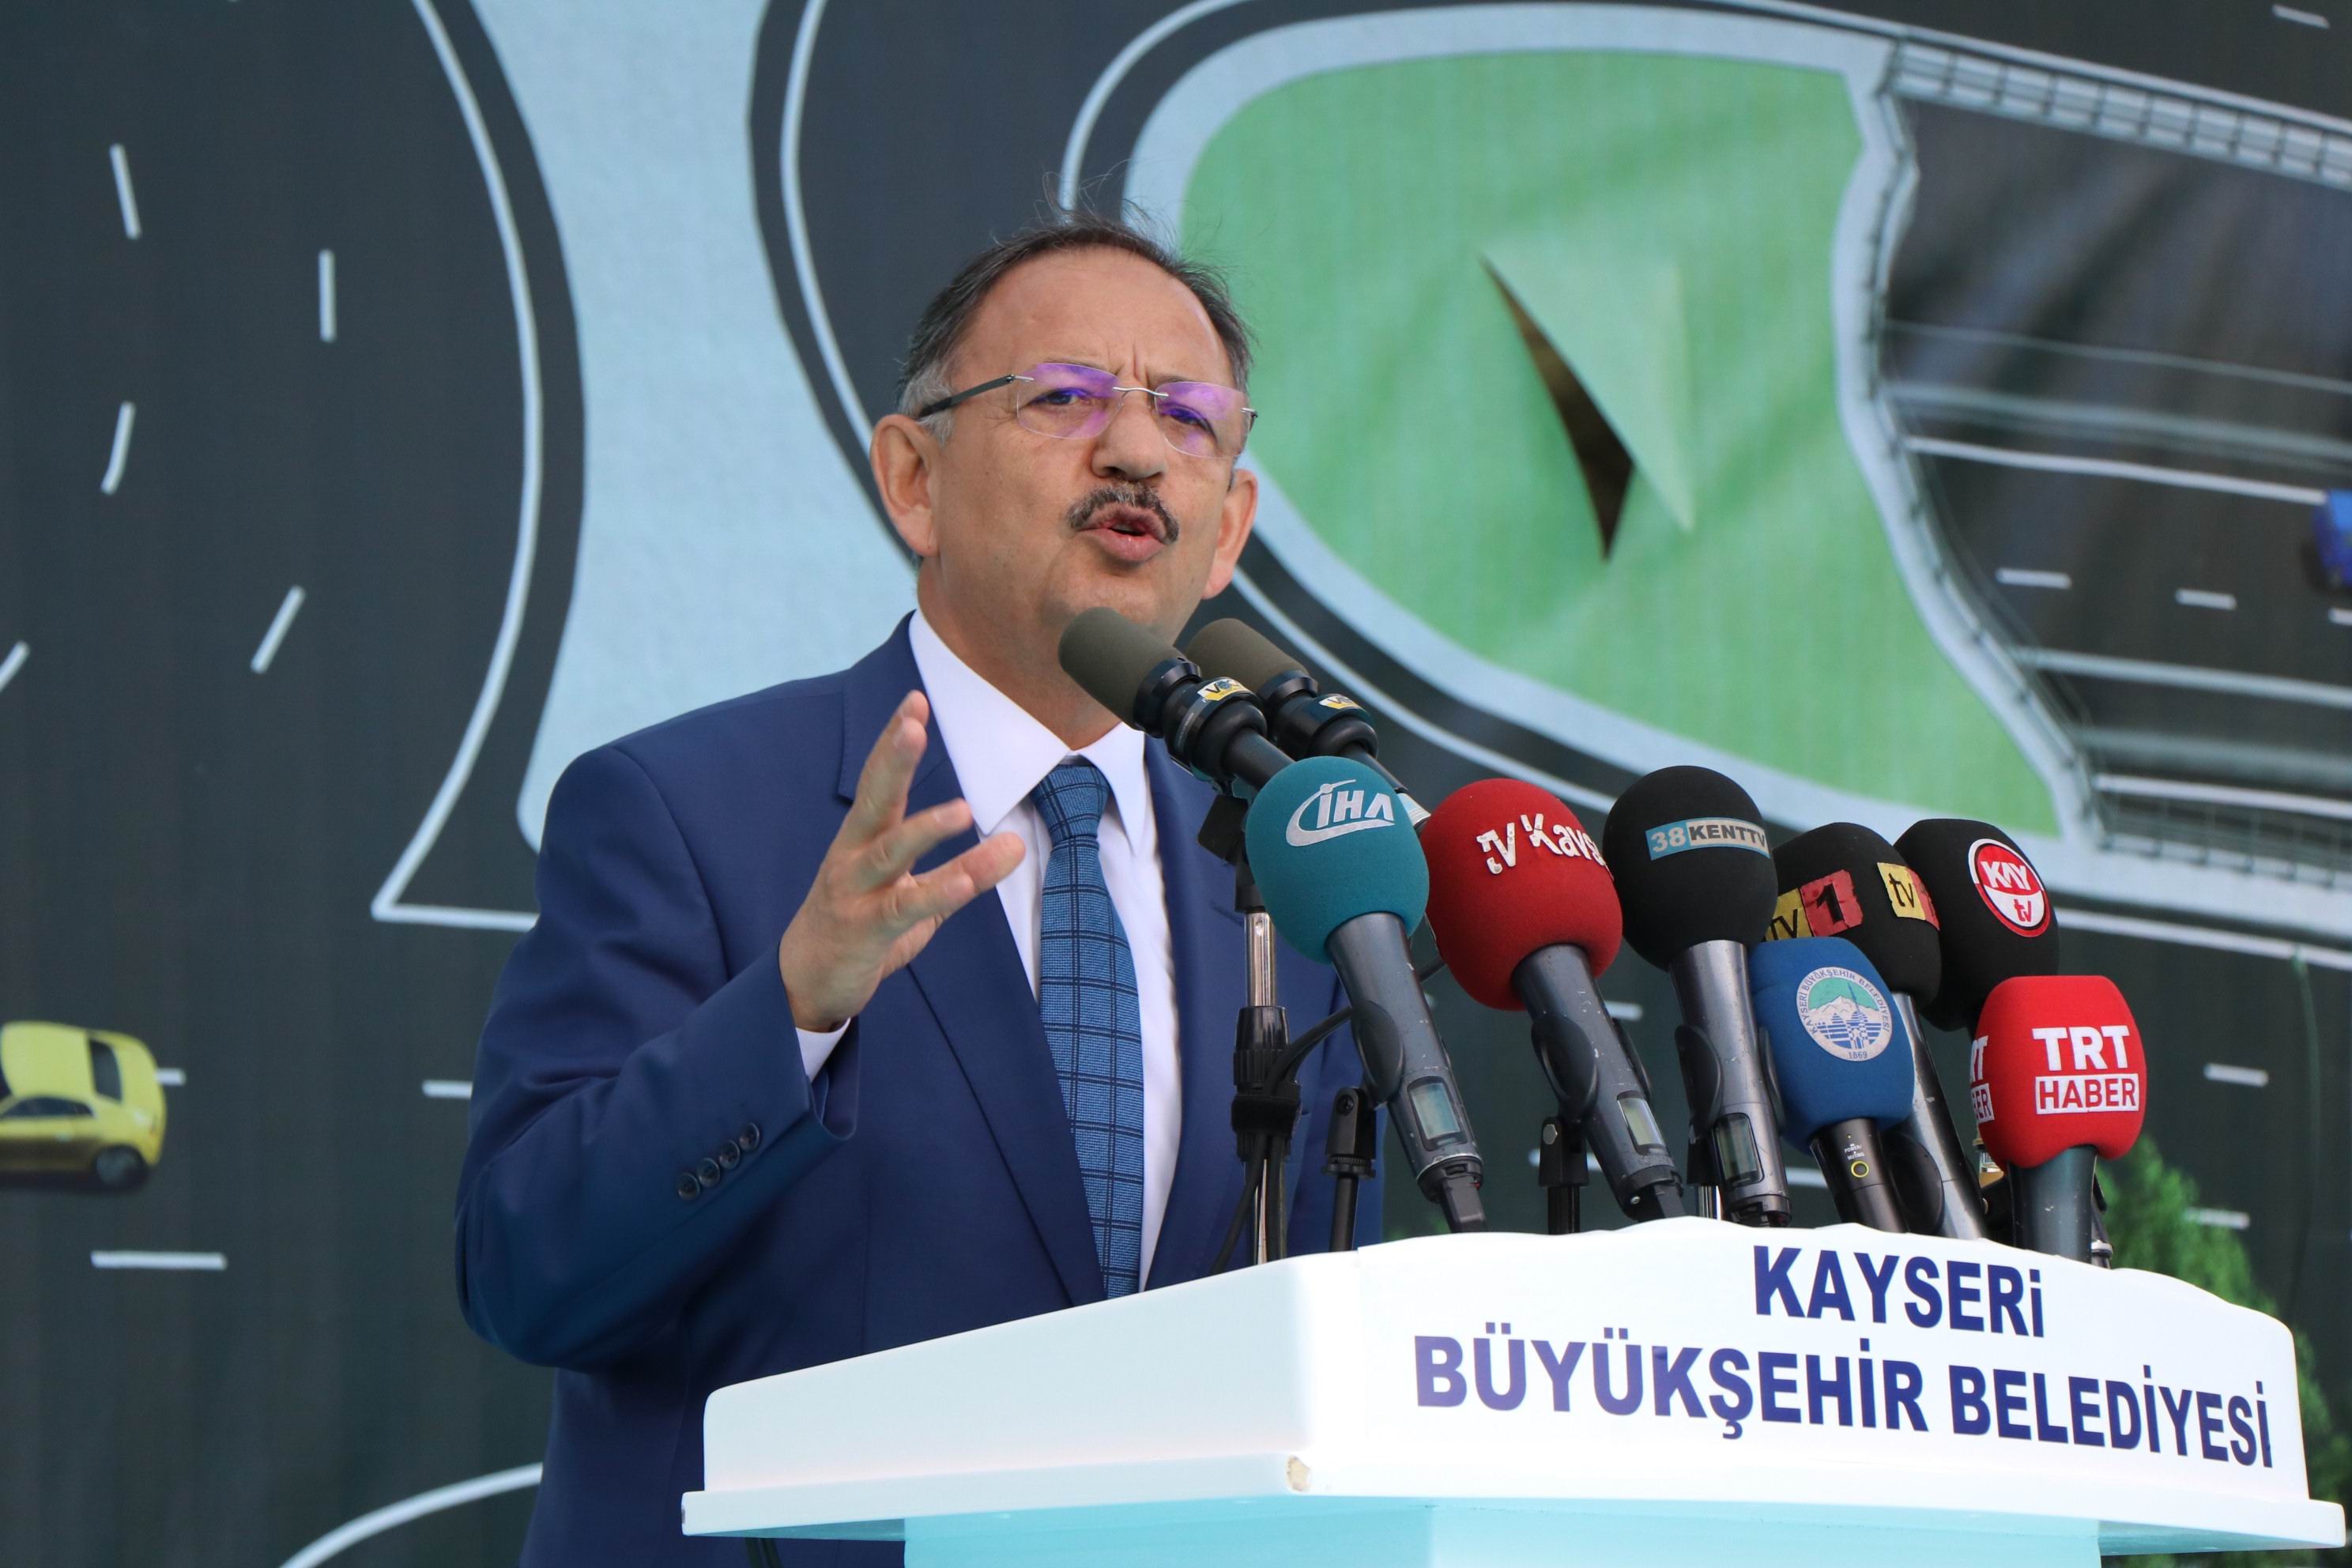 Bakan Özhaseki: “Madem o kadar kıymetliydi kendi partinize genel başkan yapsaydınız”